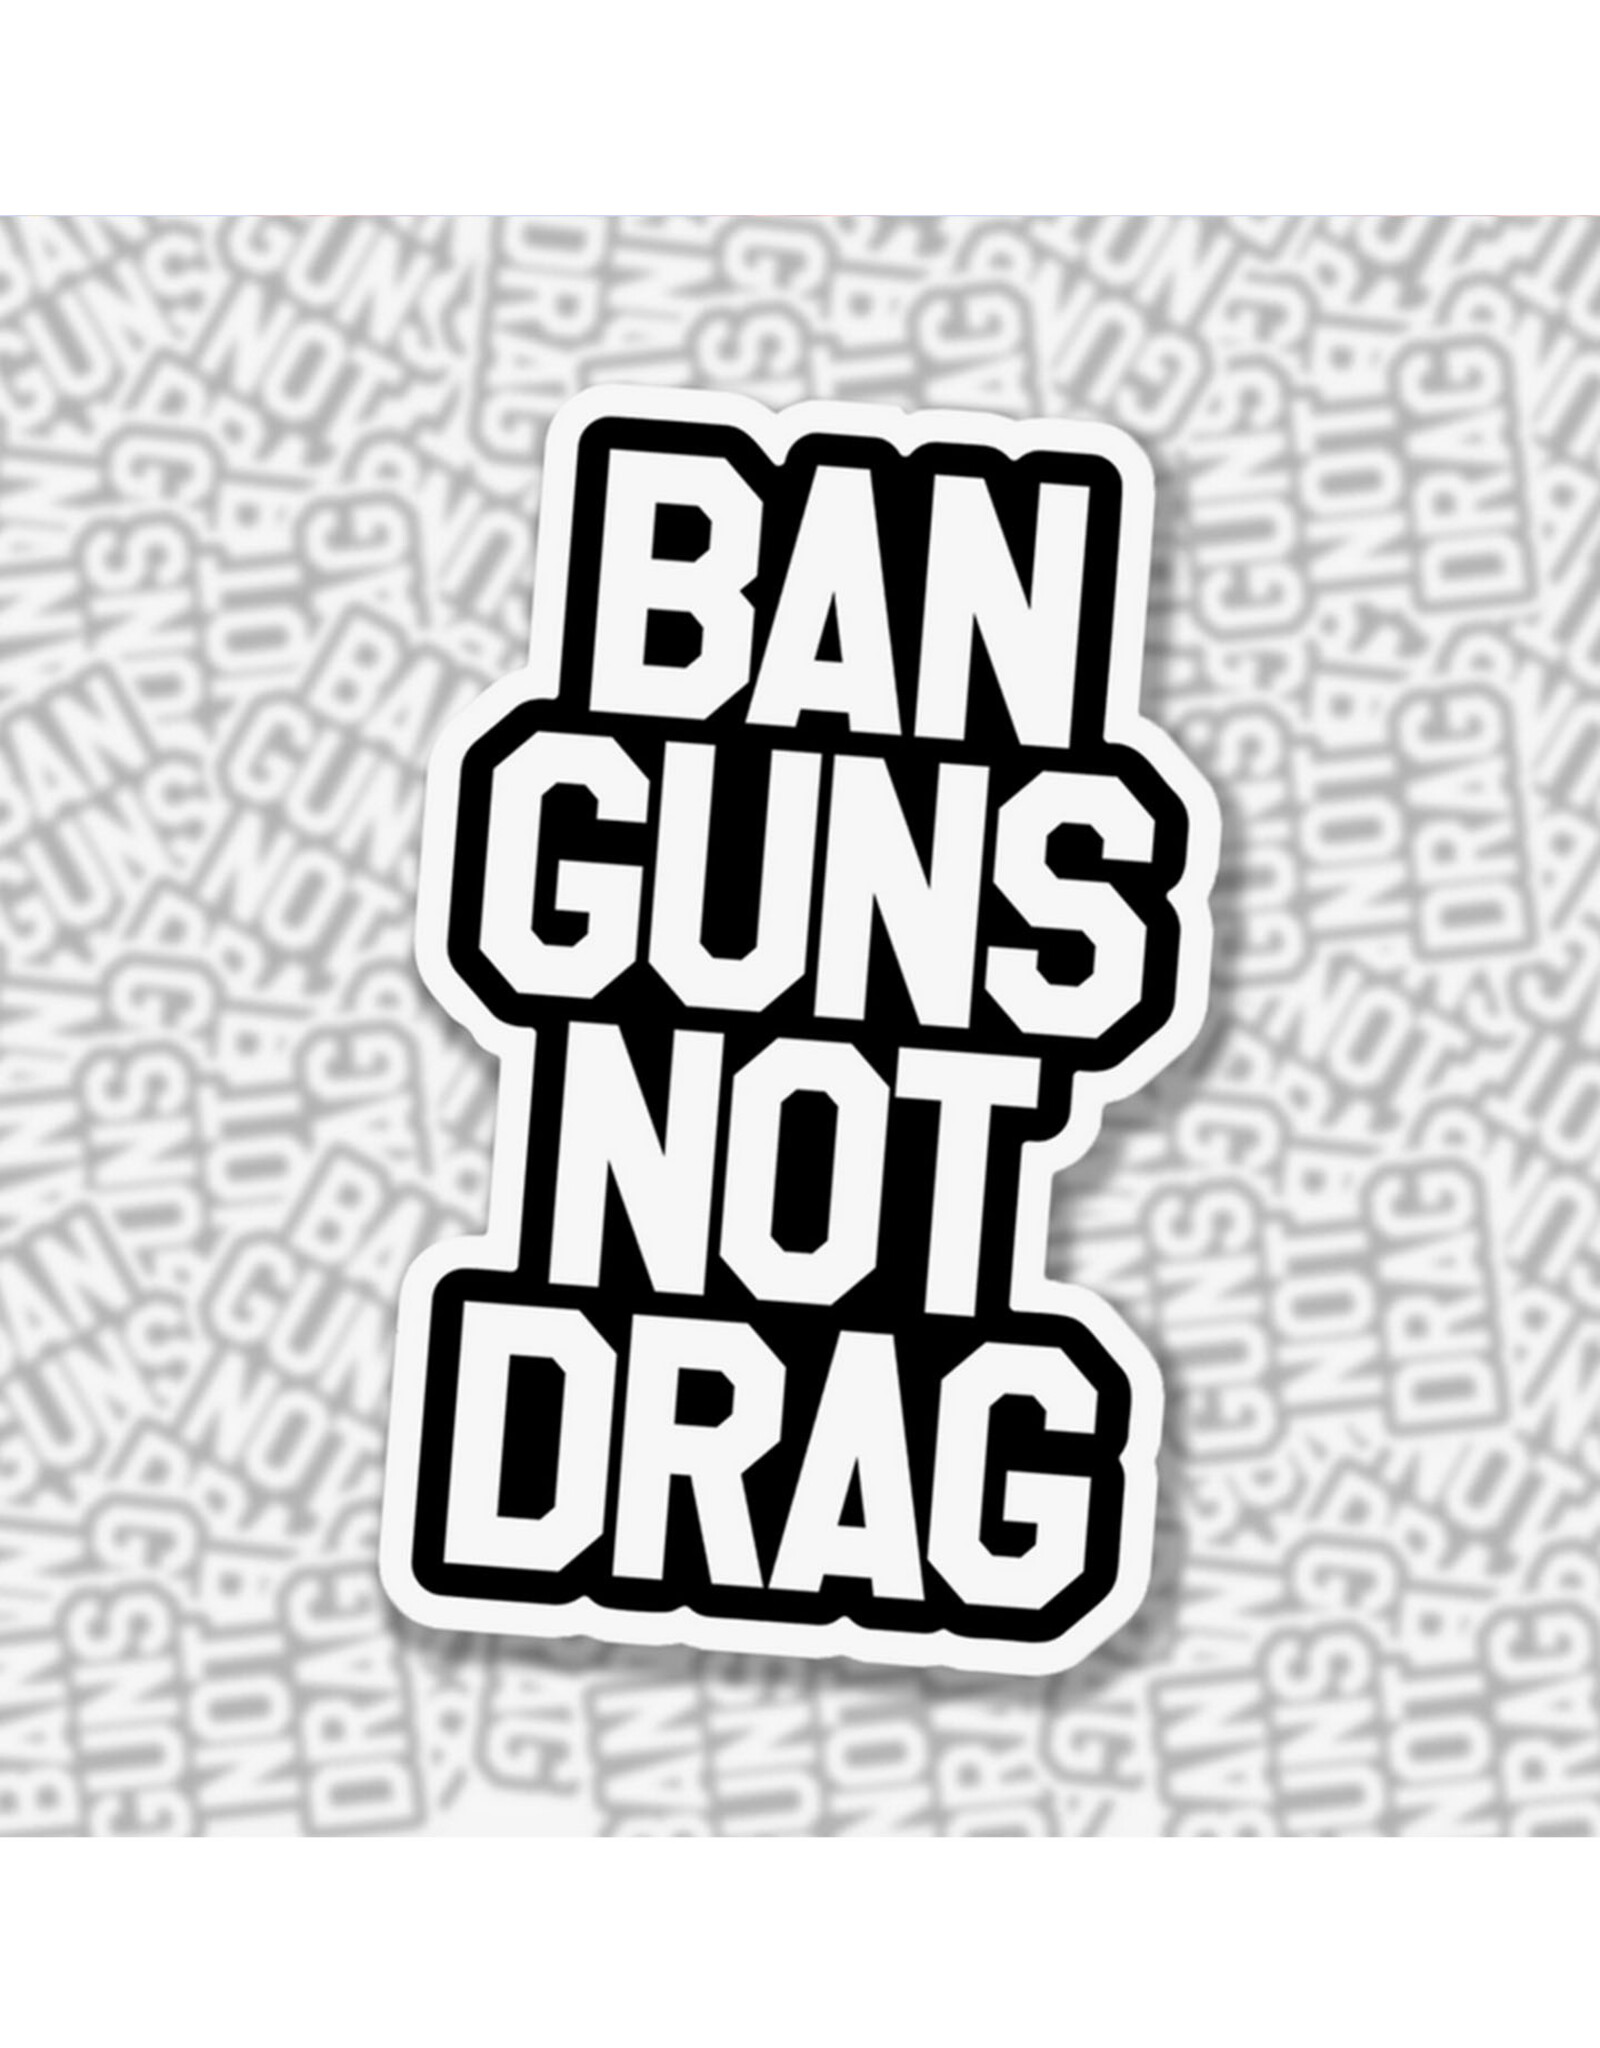 Ban Guns Not Drag Sticker